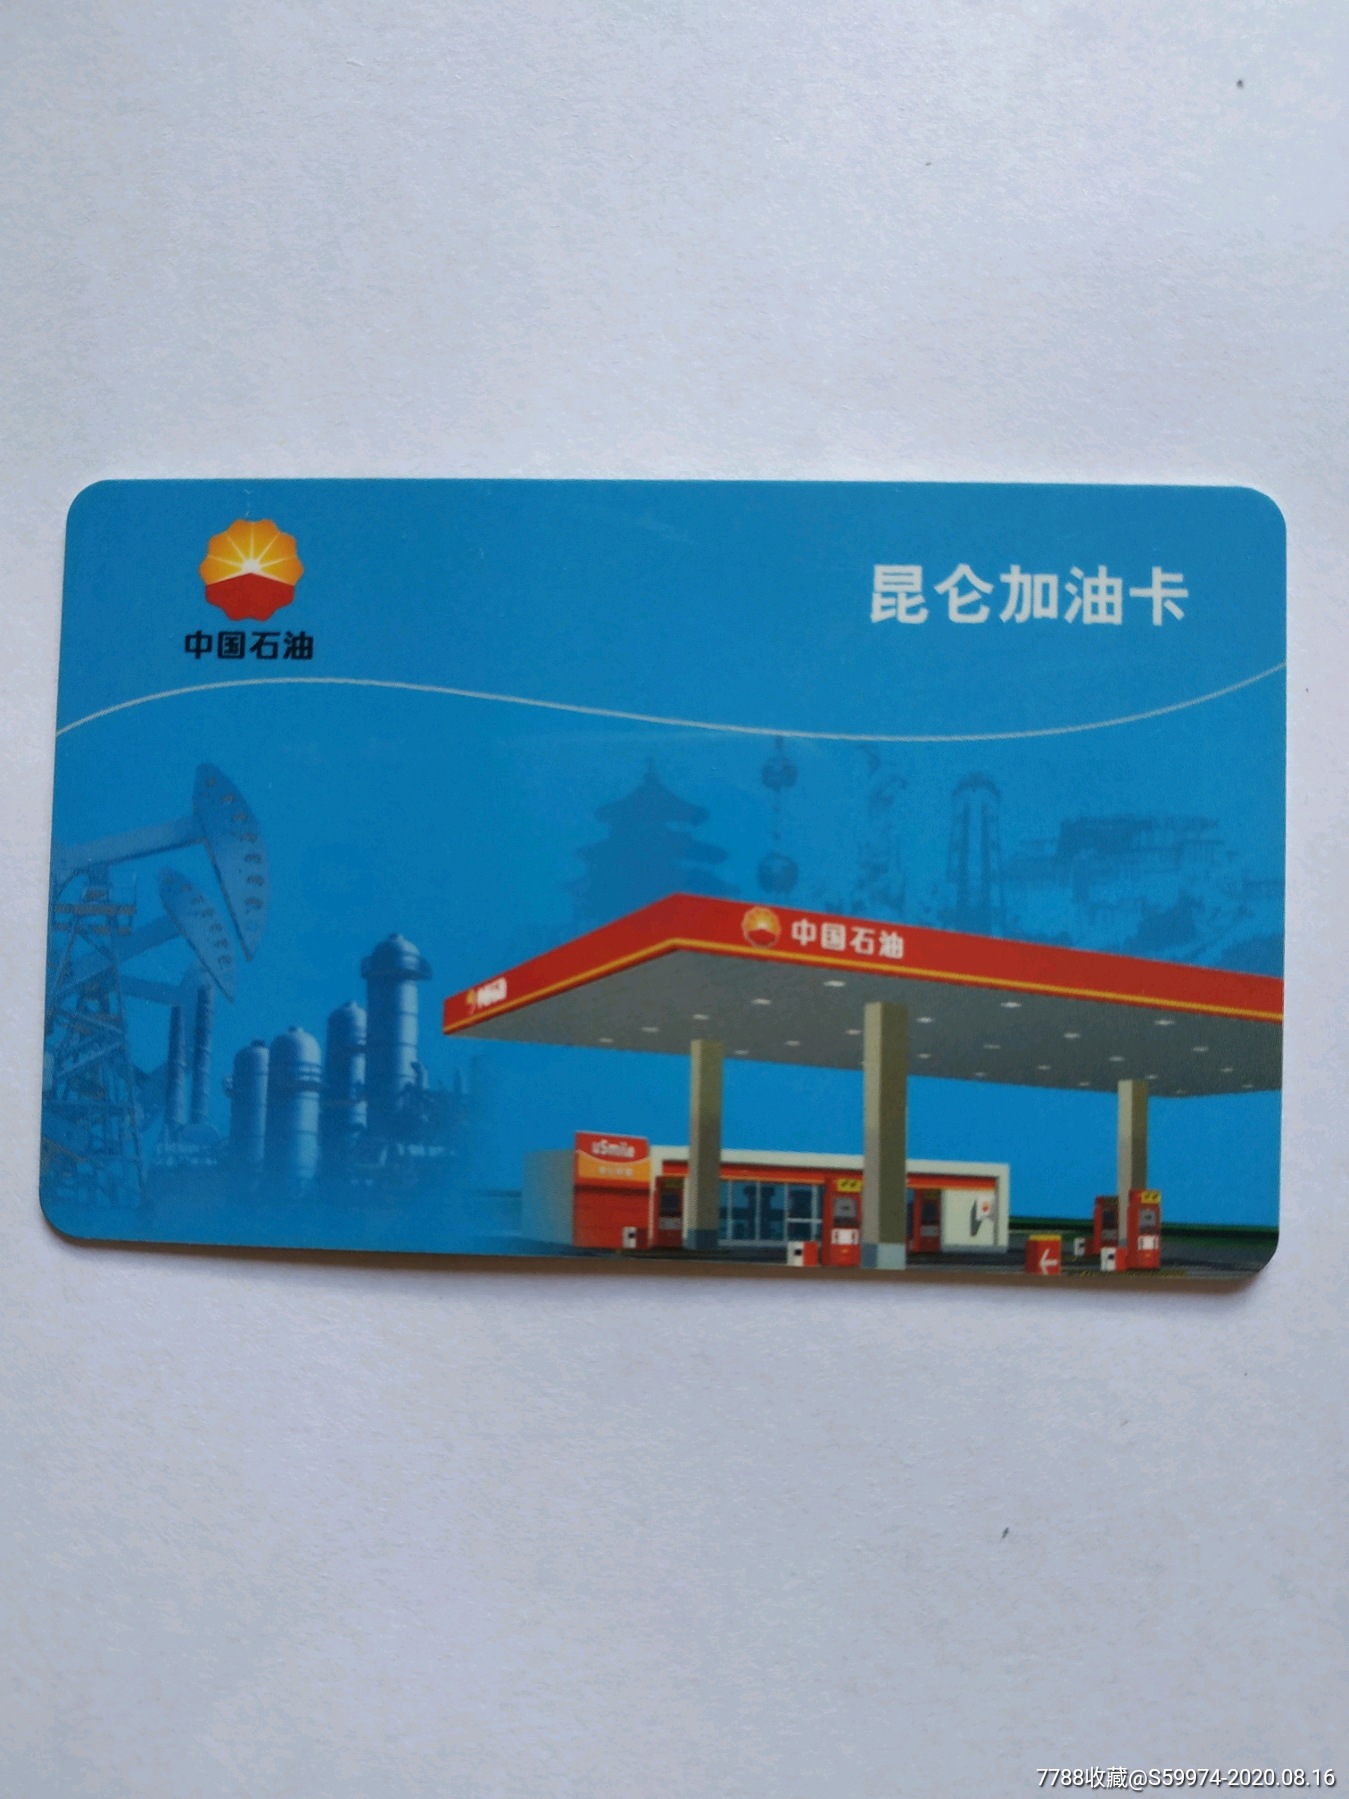 欧宝电竞:中国石油记名卡申办办理卡开户的客户需填写